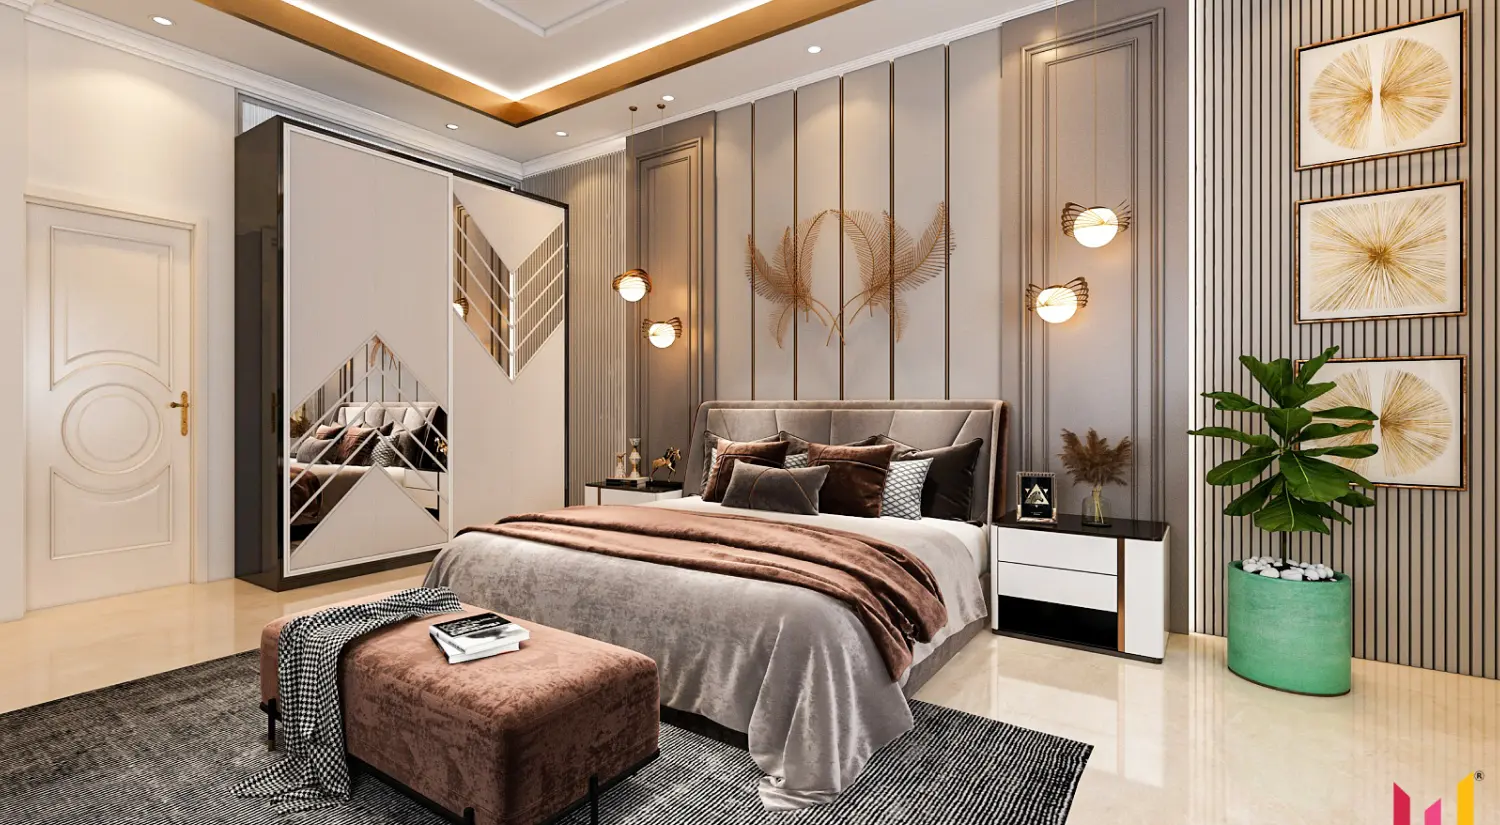 Luxury interior designers in Bangalore